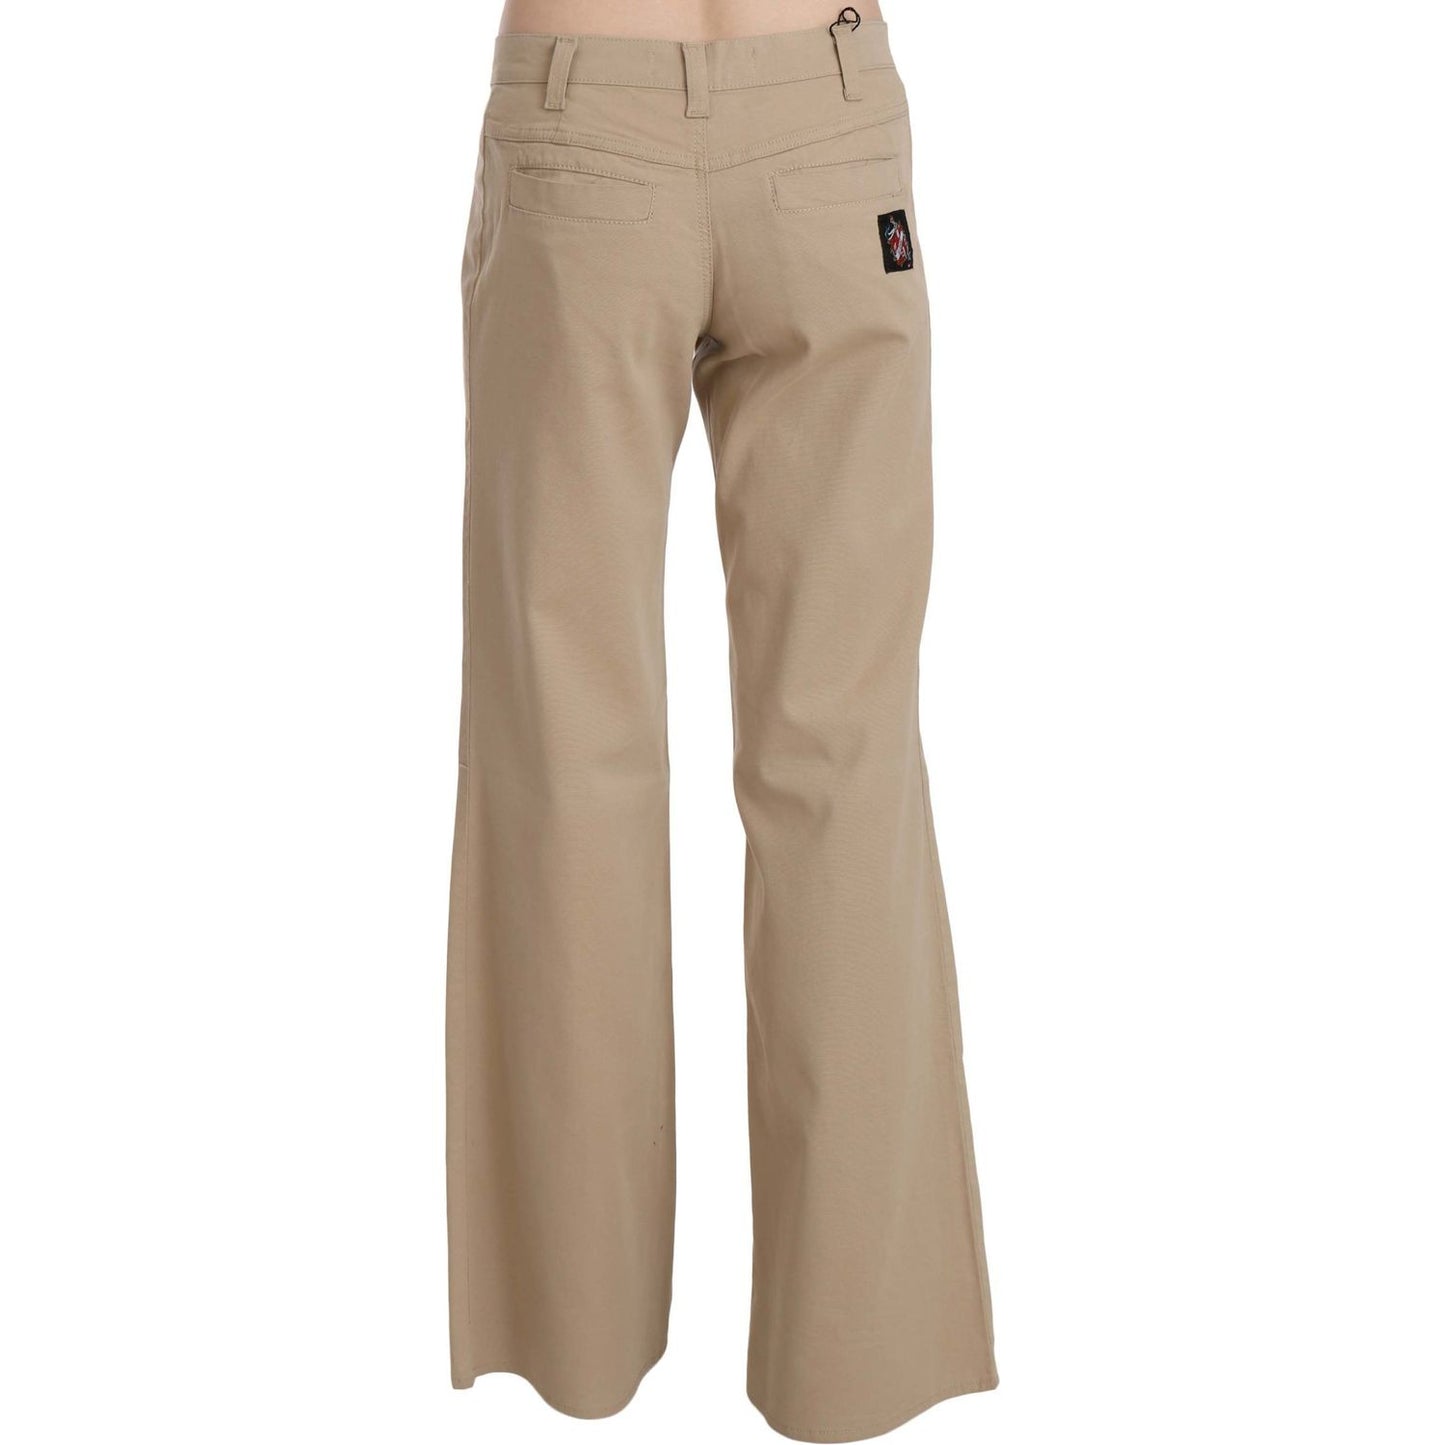 Just Cavalli Beige Mid Waist Flared Luxury Trousers beige-cotton-mid-waist-flared-trousers-pants Jeans & Pants IMG_6095-scaled-23fedfbe-399.jpg